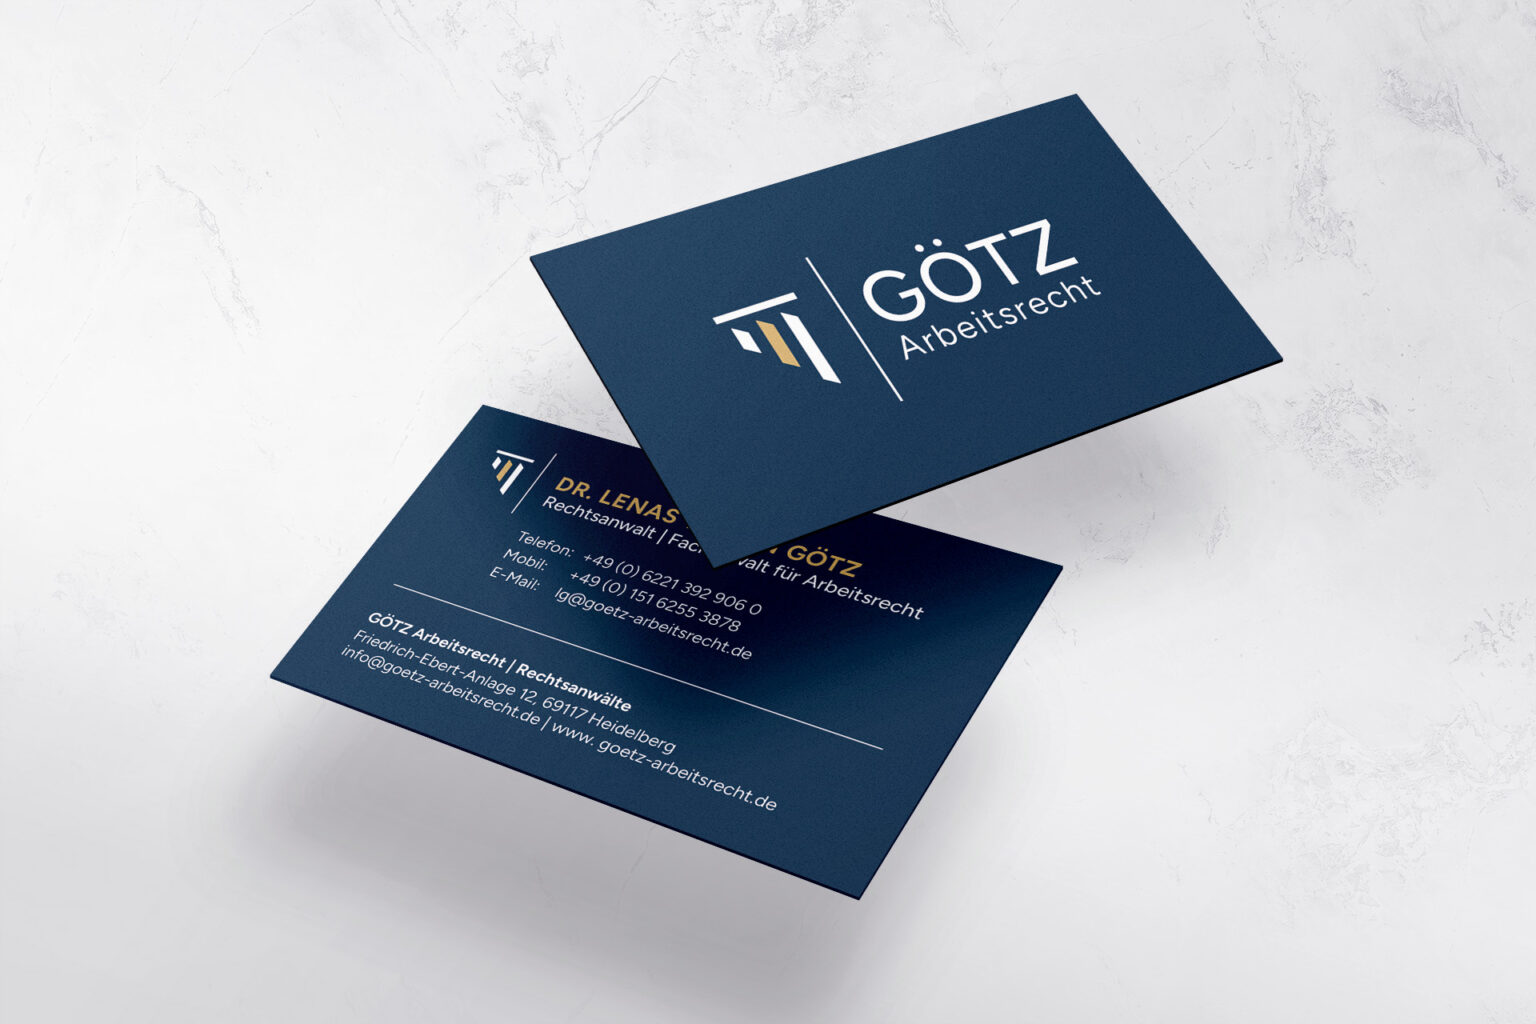 marketing agentur dresden referenz goetz arbeitsrecht visitenkarten